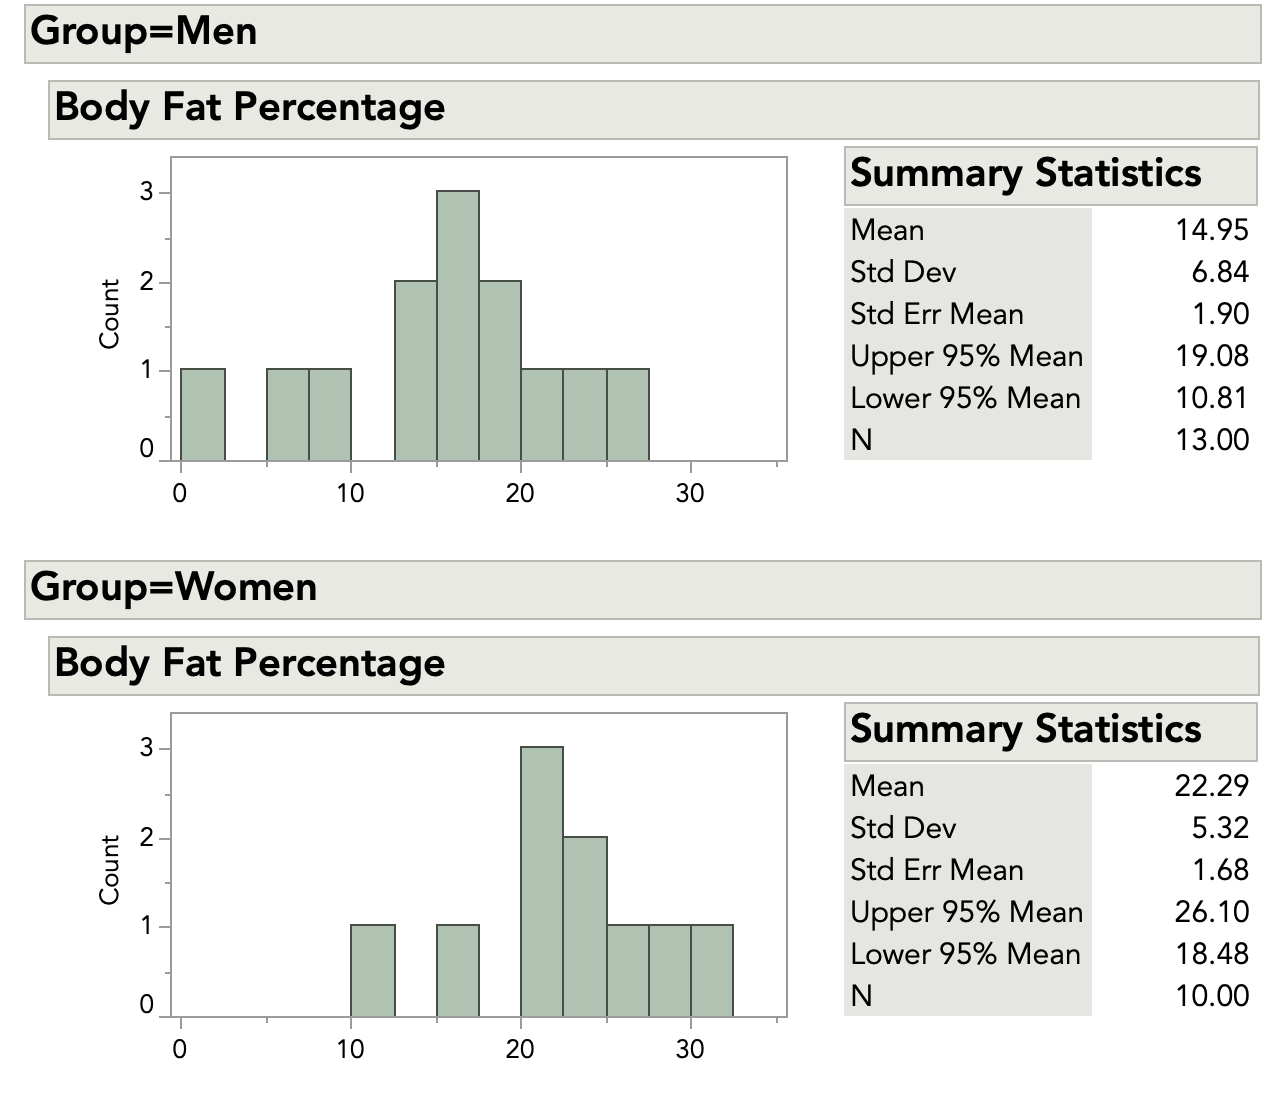 Histogramme et résumé statistique pour les données relatives à la masse grasse corporelle